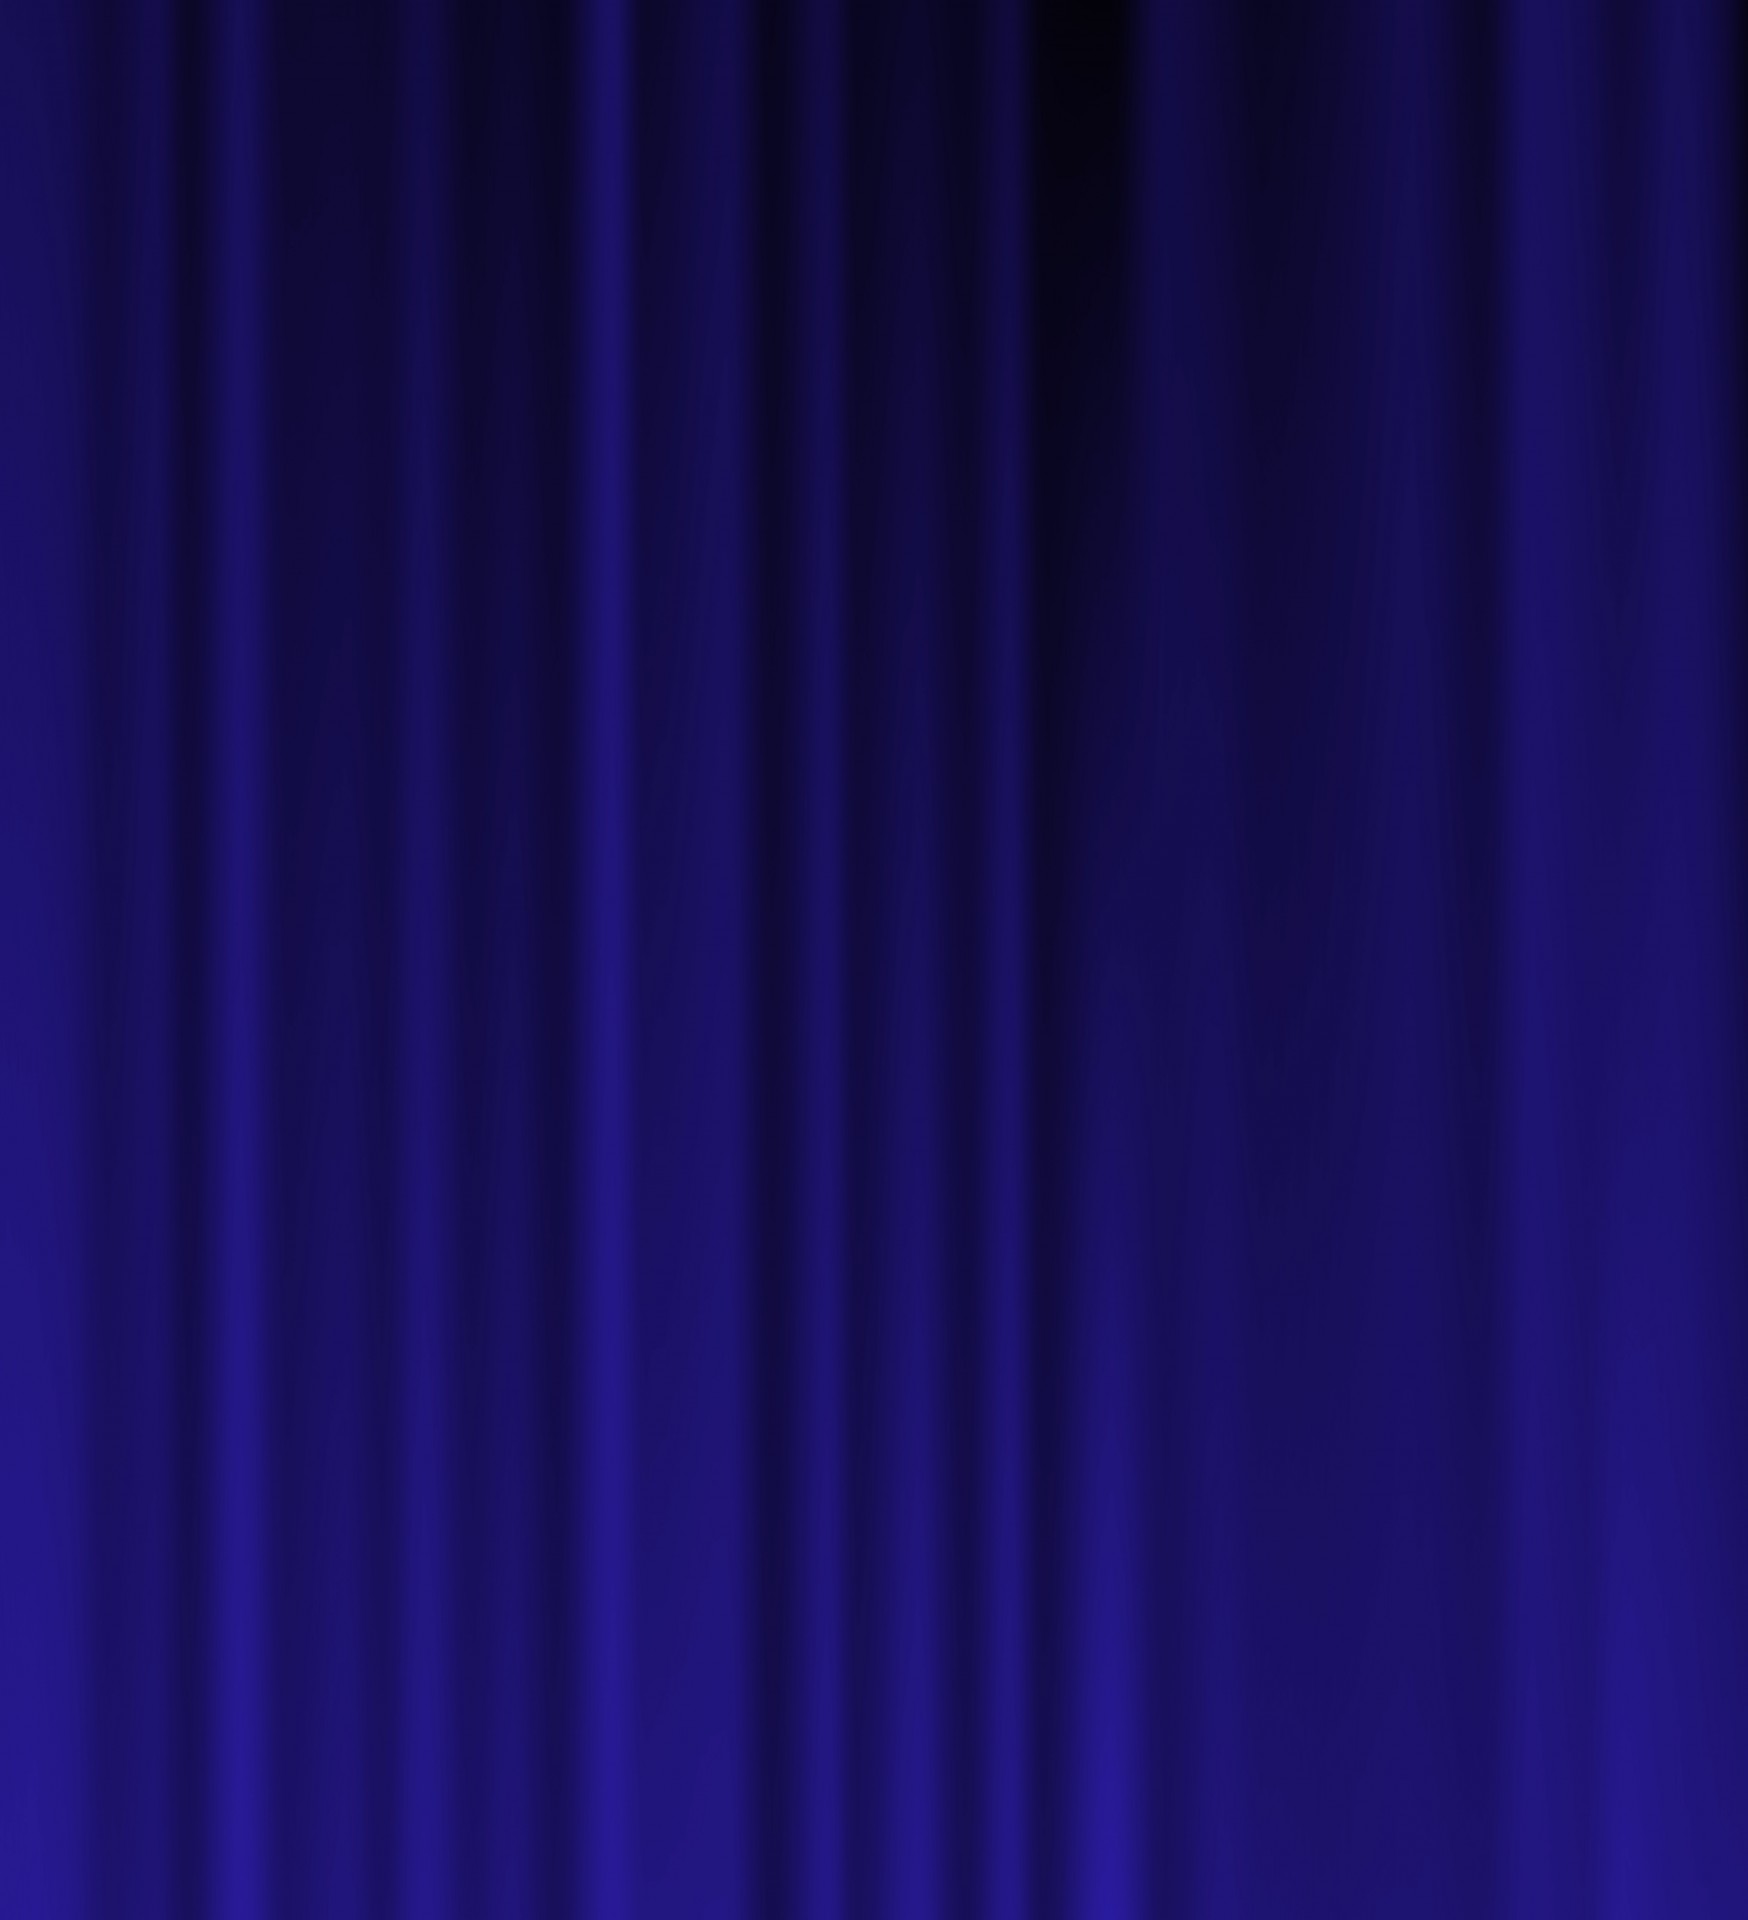 Blue Velvet Curtains Background